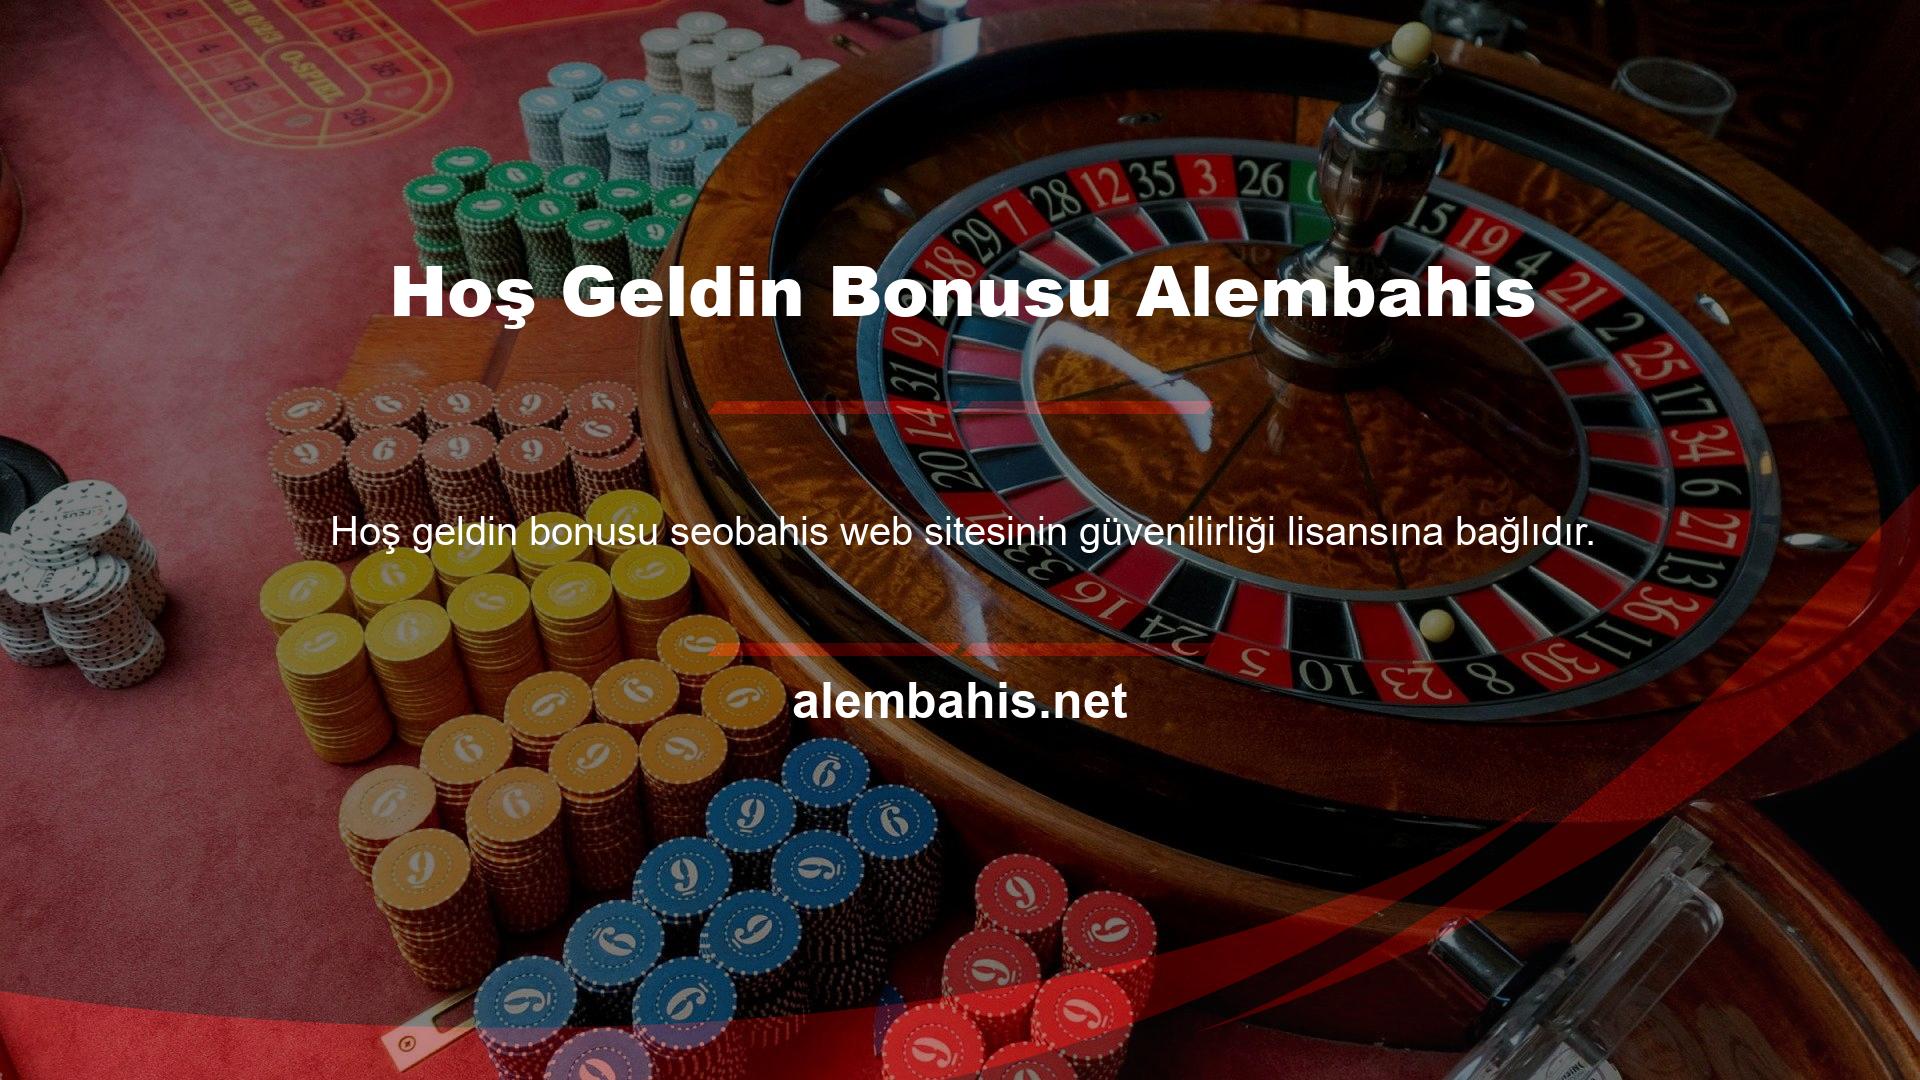 Lisanslı bir web sitesidir, Alembahis